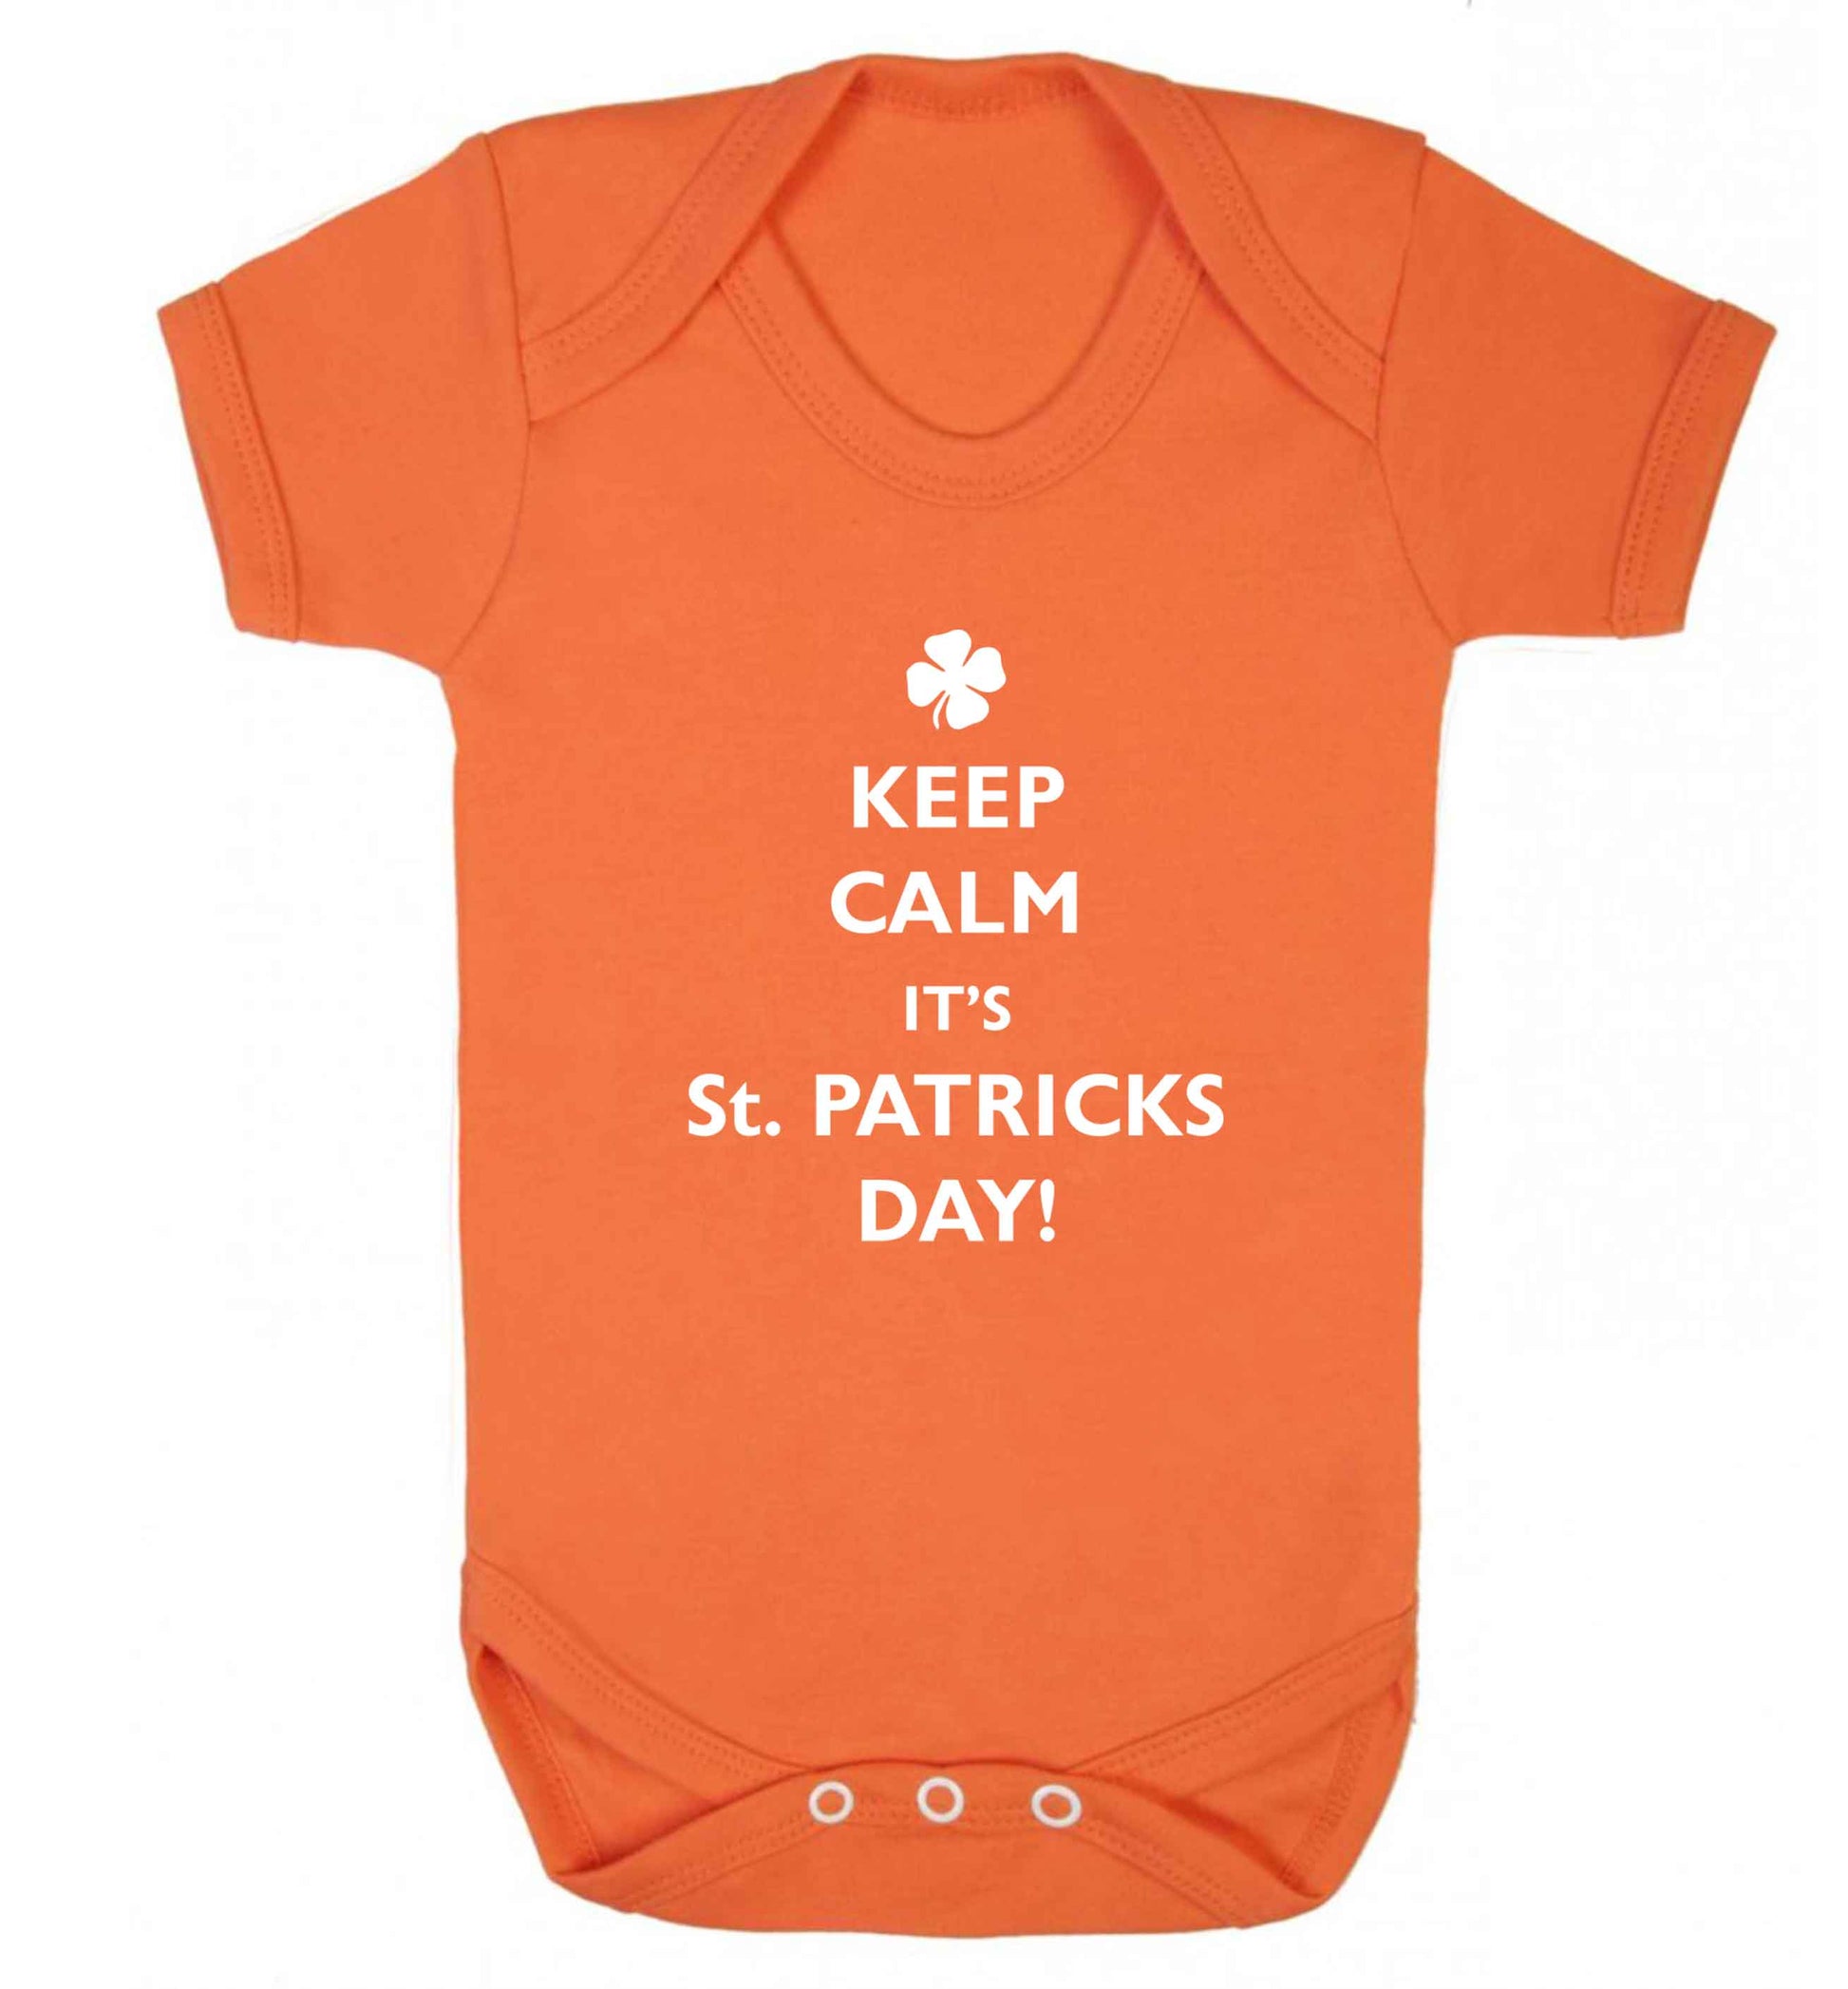 Keep calm it's St.Patricks day baby vest orange 18-24 months